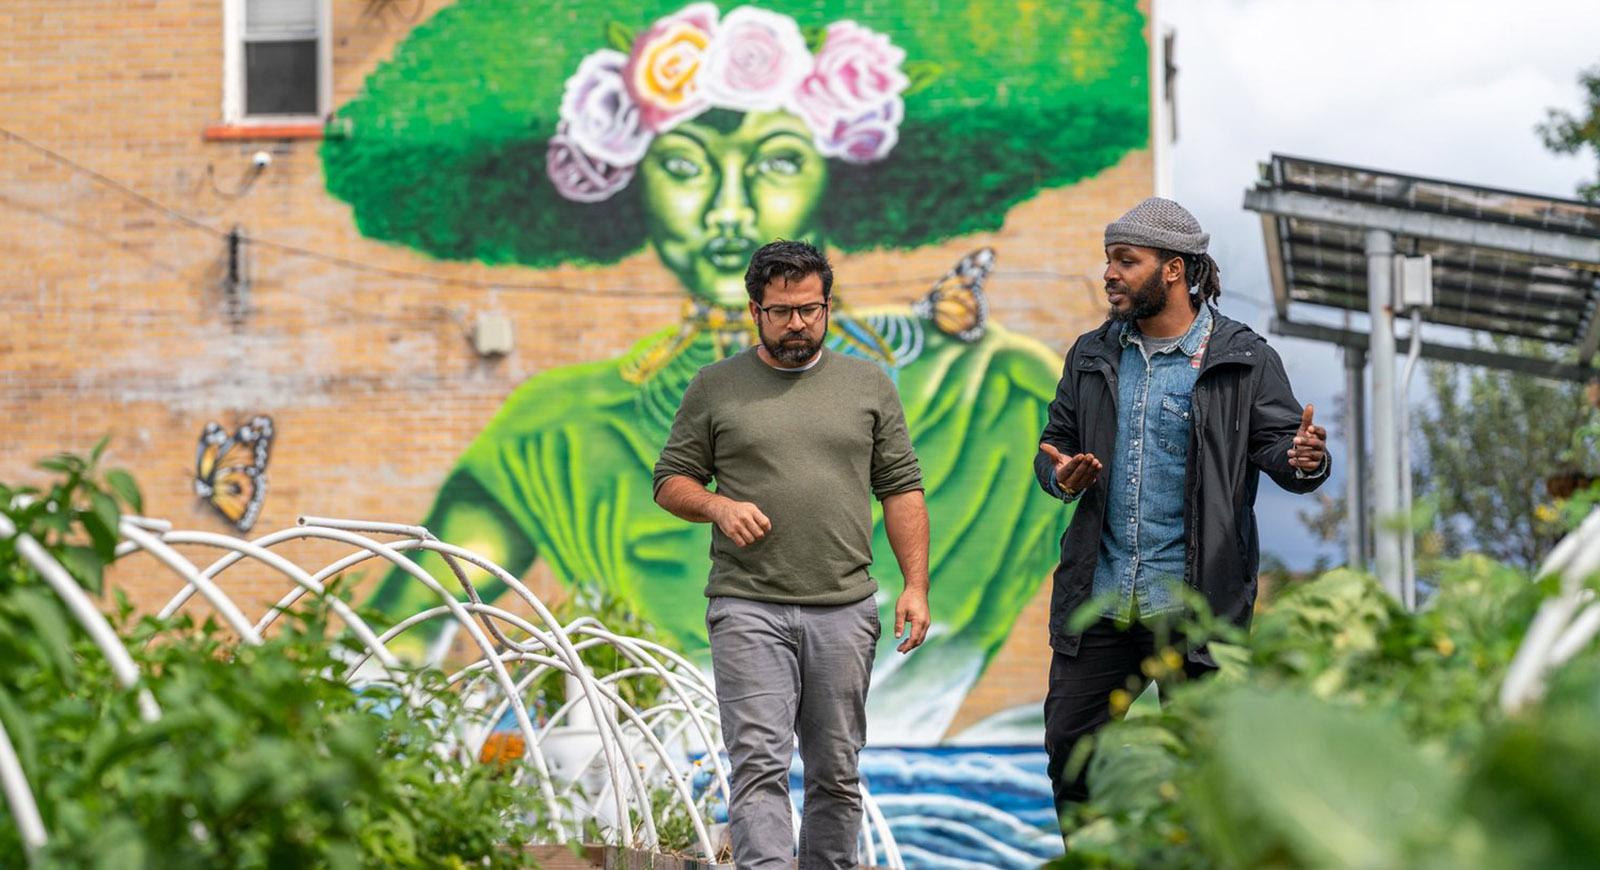 两个男人在社区花园散步聊天的照片, 有一面砖墙，背景是一幅巨大的彩色壁画